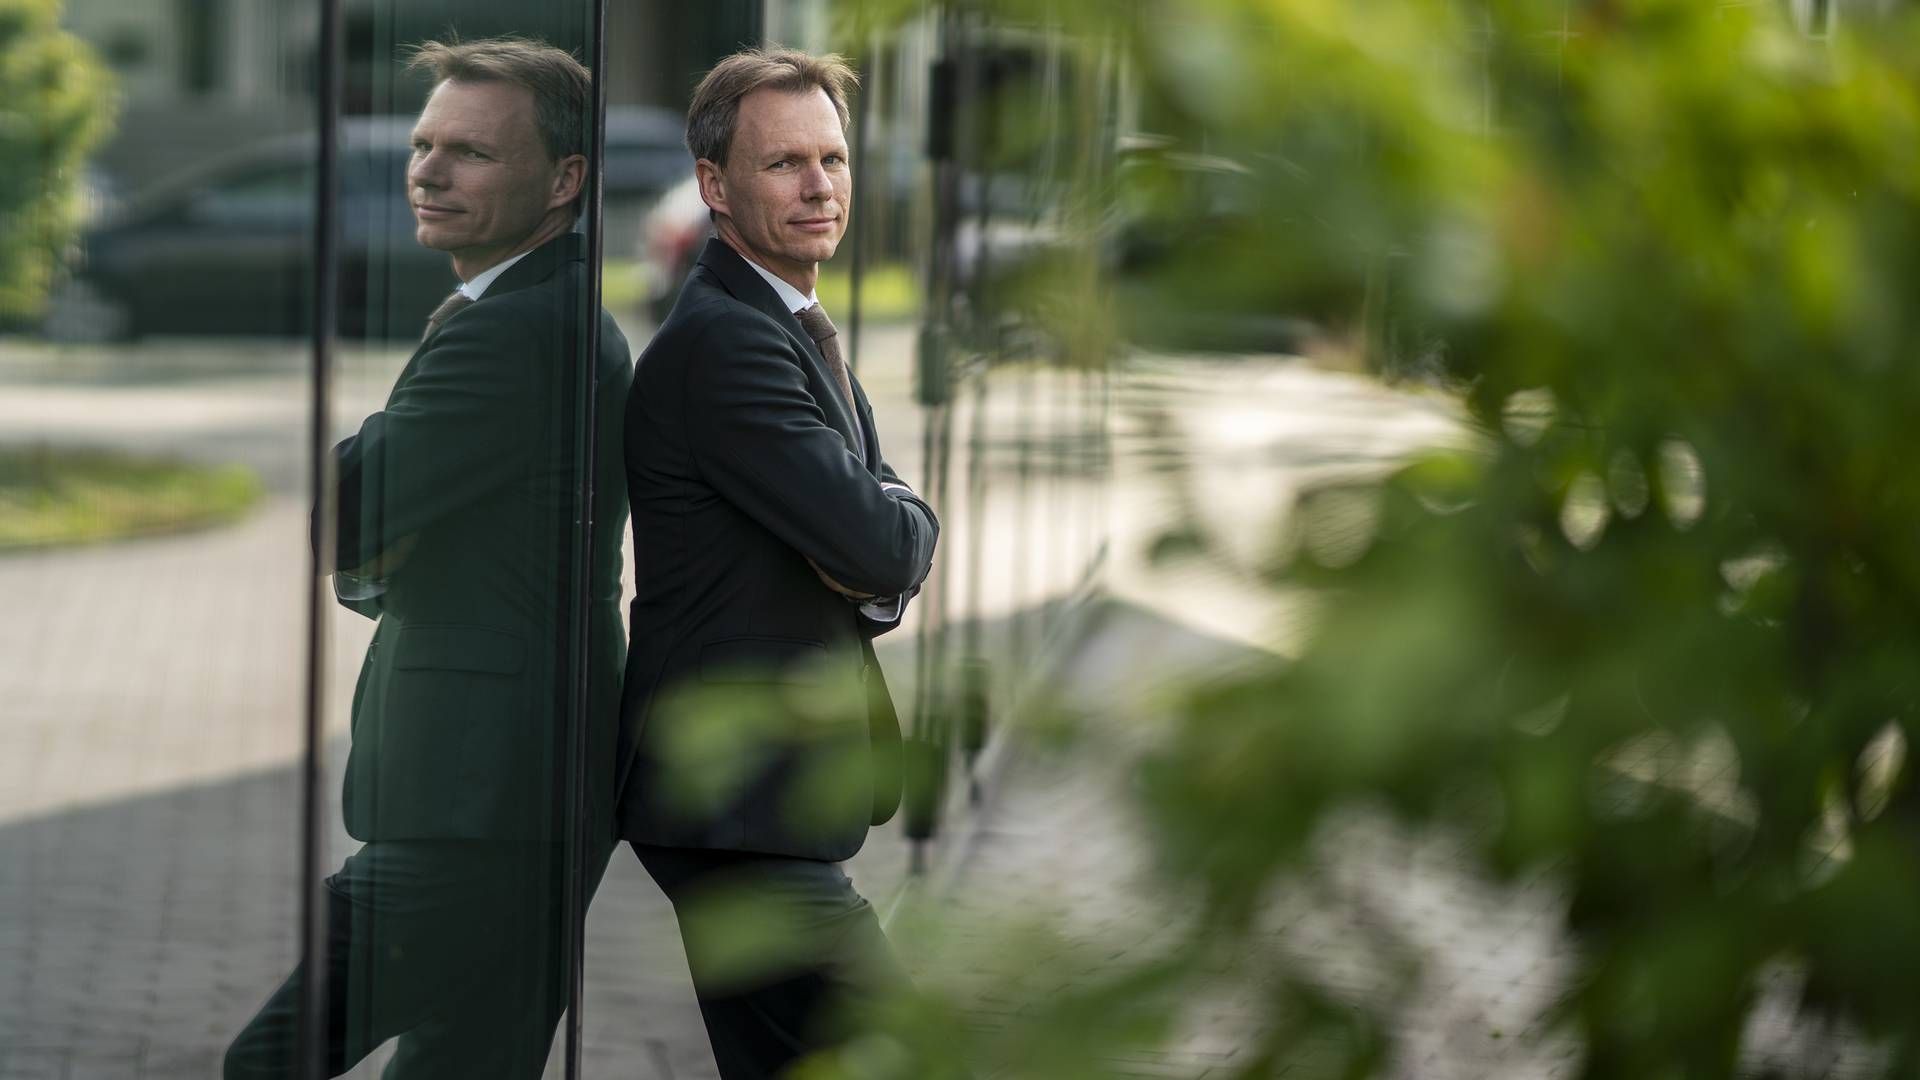 Adm. direktør i F&P, Kent Damsgaard, håber at poltikerne tør tage hul på en prioriteringsdiskussion under en kommende valgkamp. | Foto: Stine Bidstrup/ERH